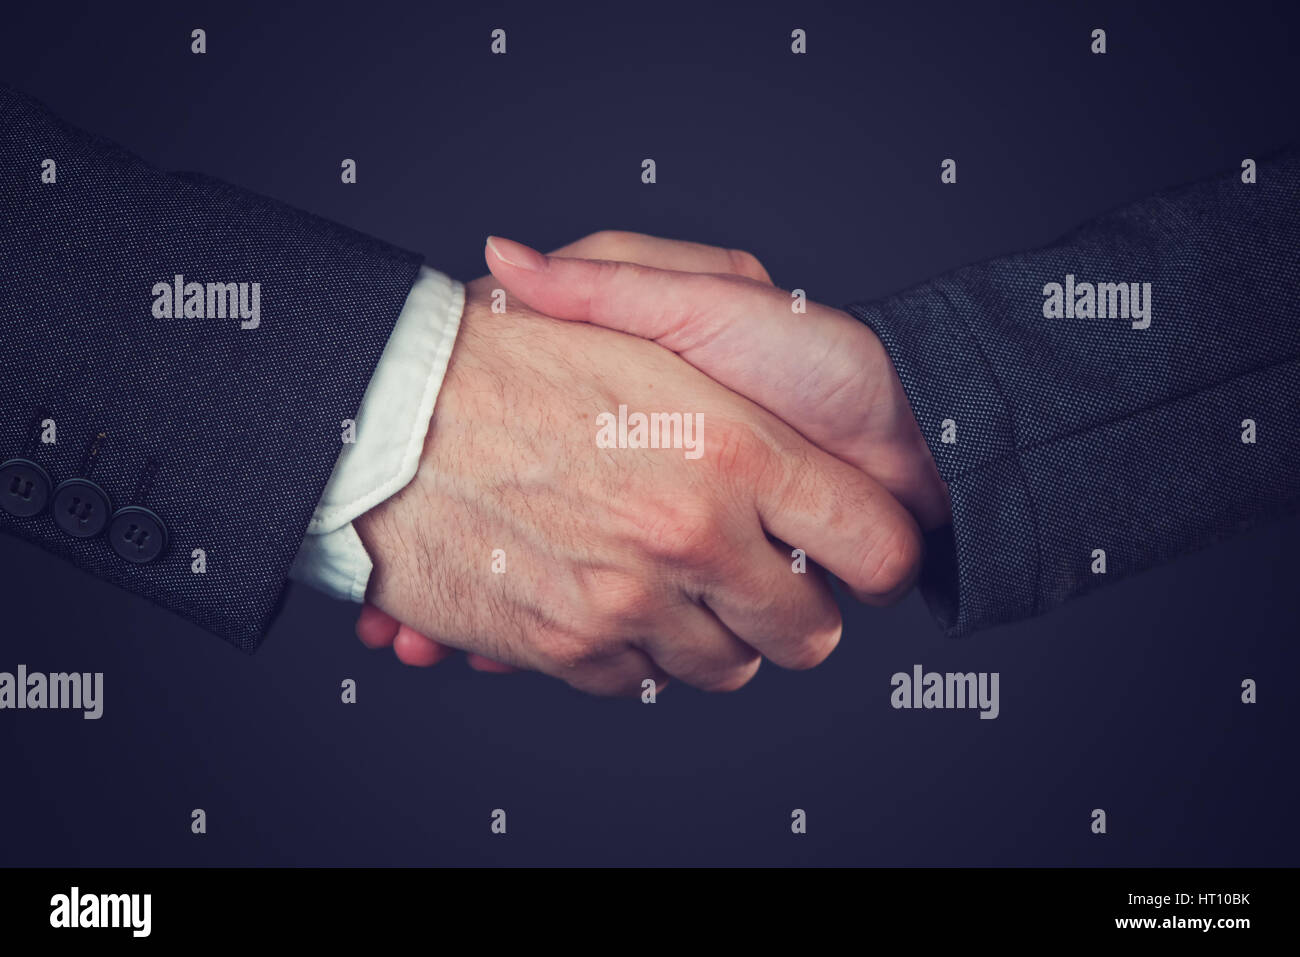 Joint Venture, corporate Menschen Handshaking vorübergehende eine Partnerschaft durch gemeinsames Eigentum über Geschäft Unternehmen bilden Stockfoto